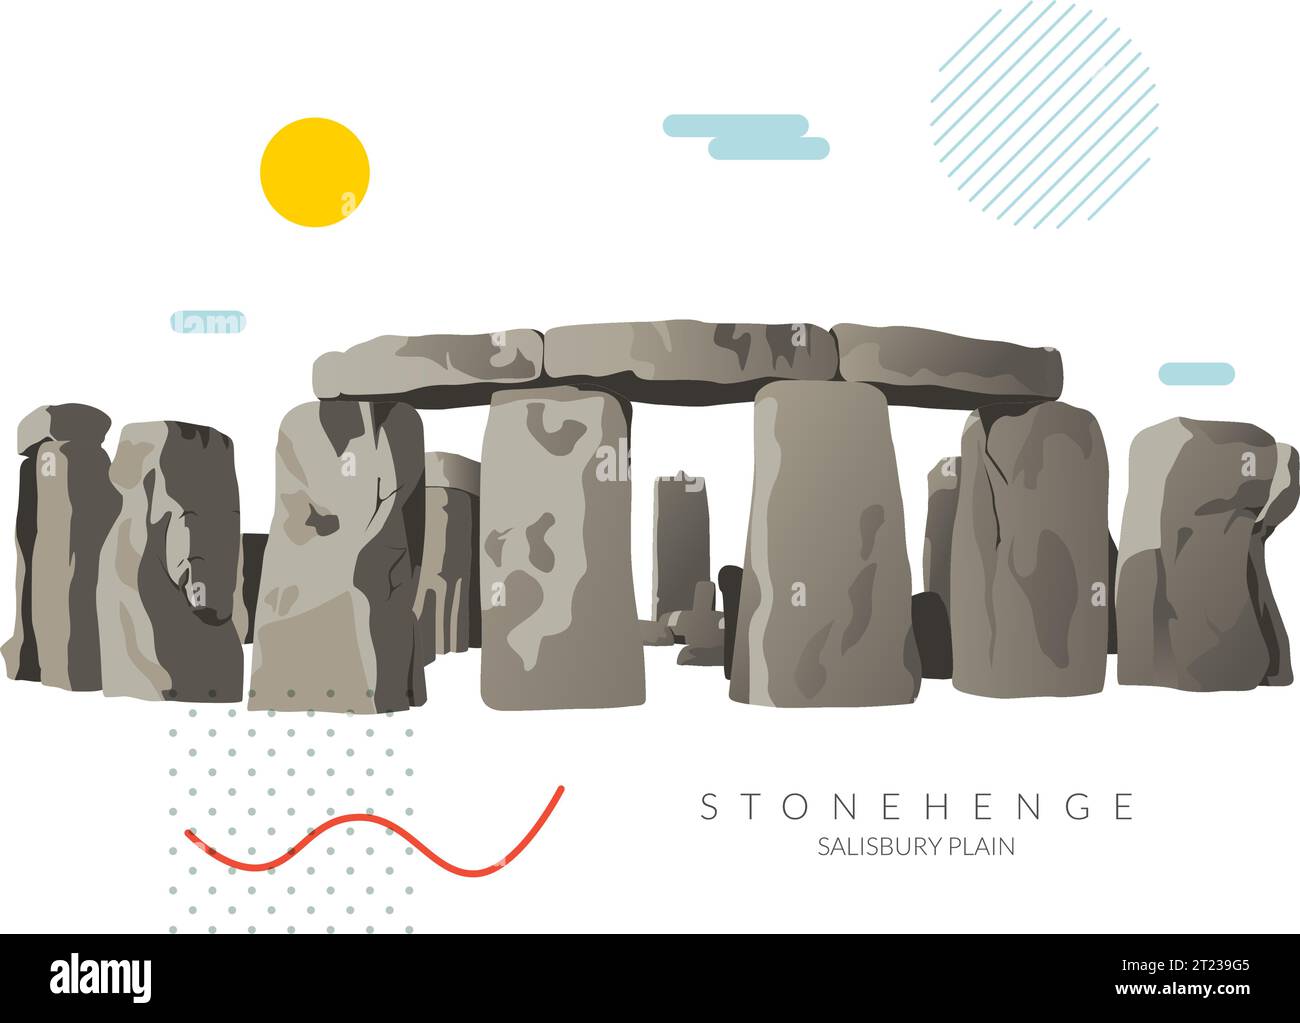 Stonehenge - Salisbury Plain, icono cultural del Reino Unido - Ilustración de stock como EPS 10 archivo Ilustración del Vector